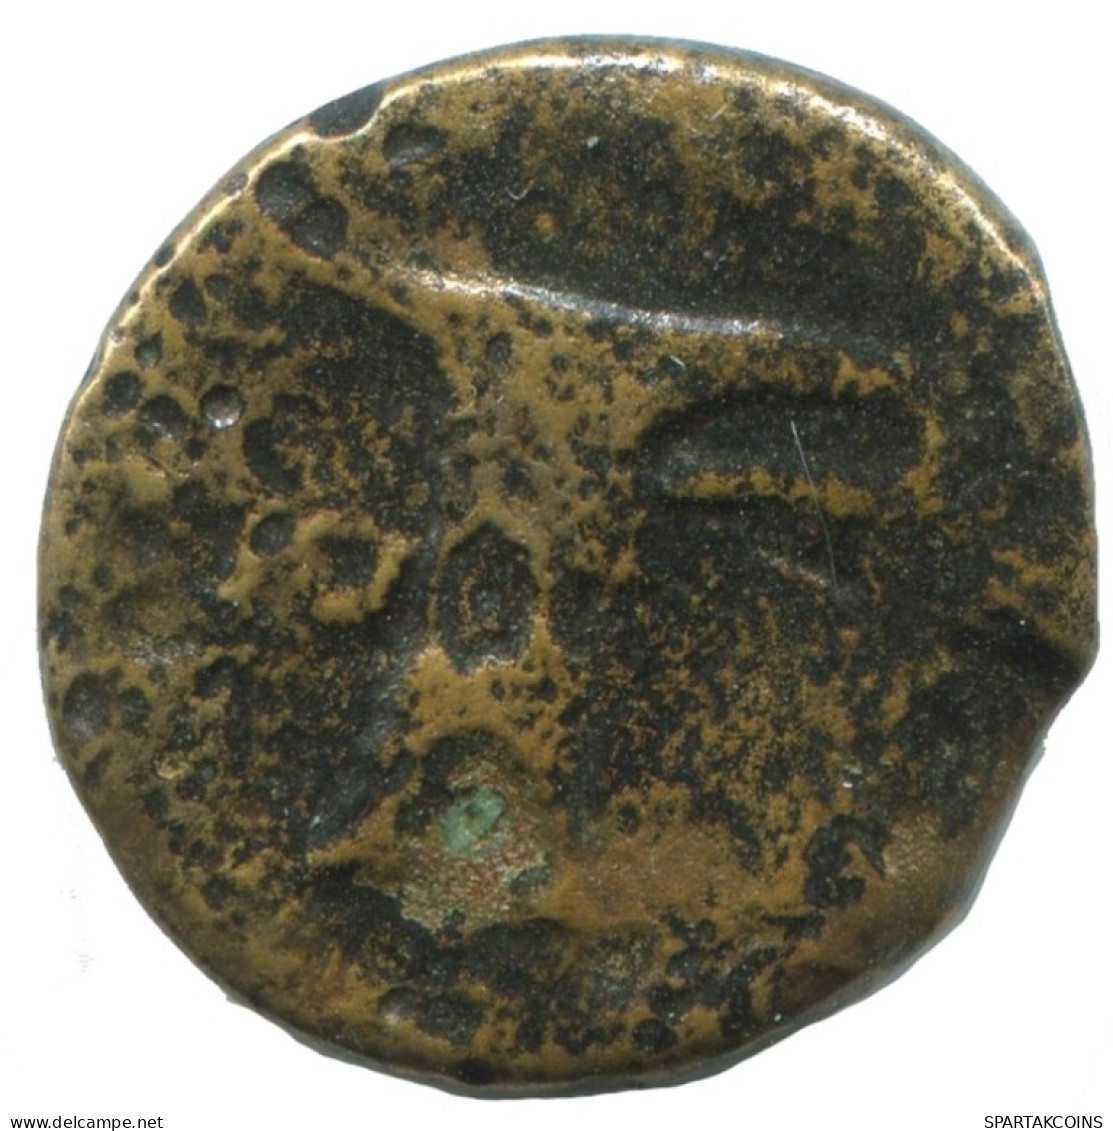 AIOLIS KYME HORSE SKYPHOS Antike GRIECHISCHE Münze 3.9g/16mm #AG033.12.D.A - Griechische Münzen